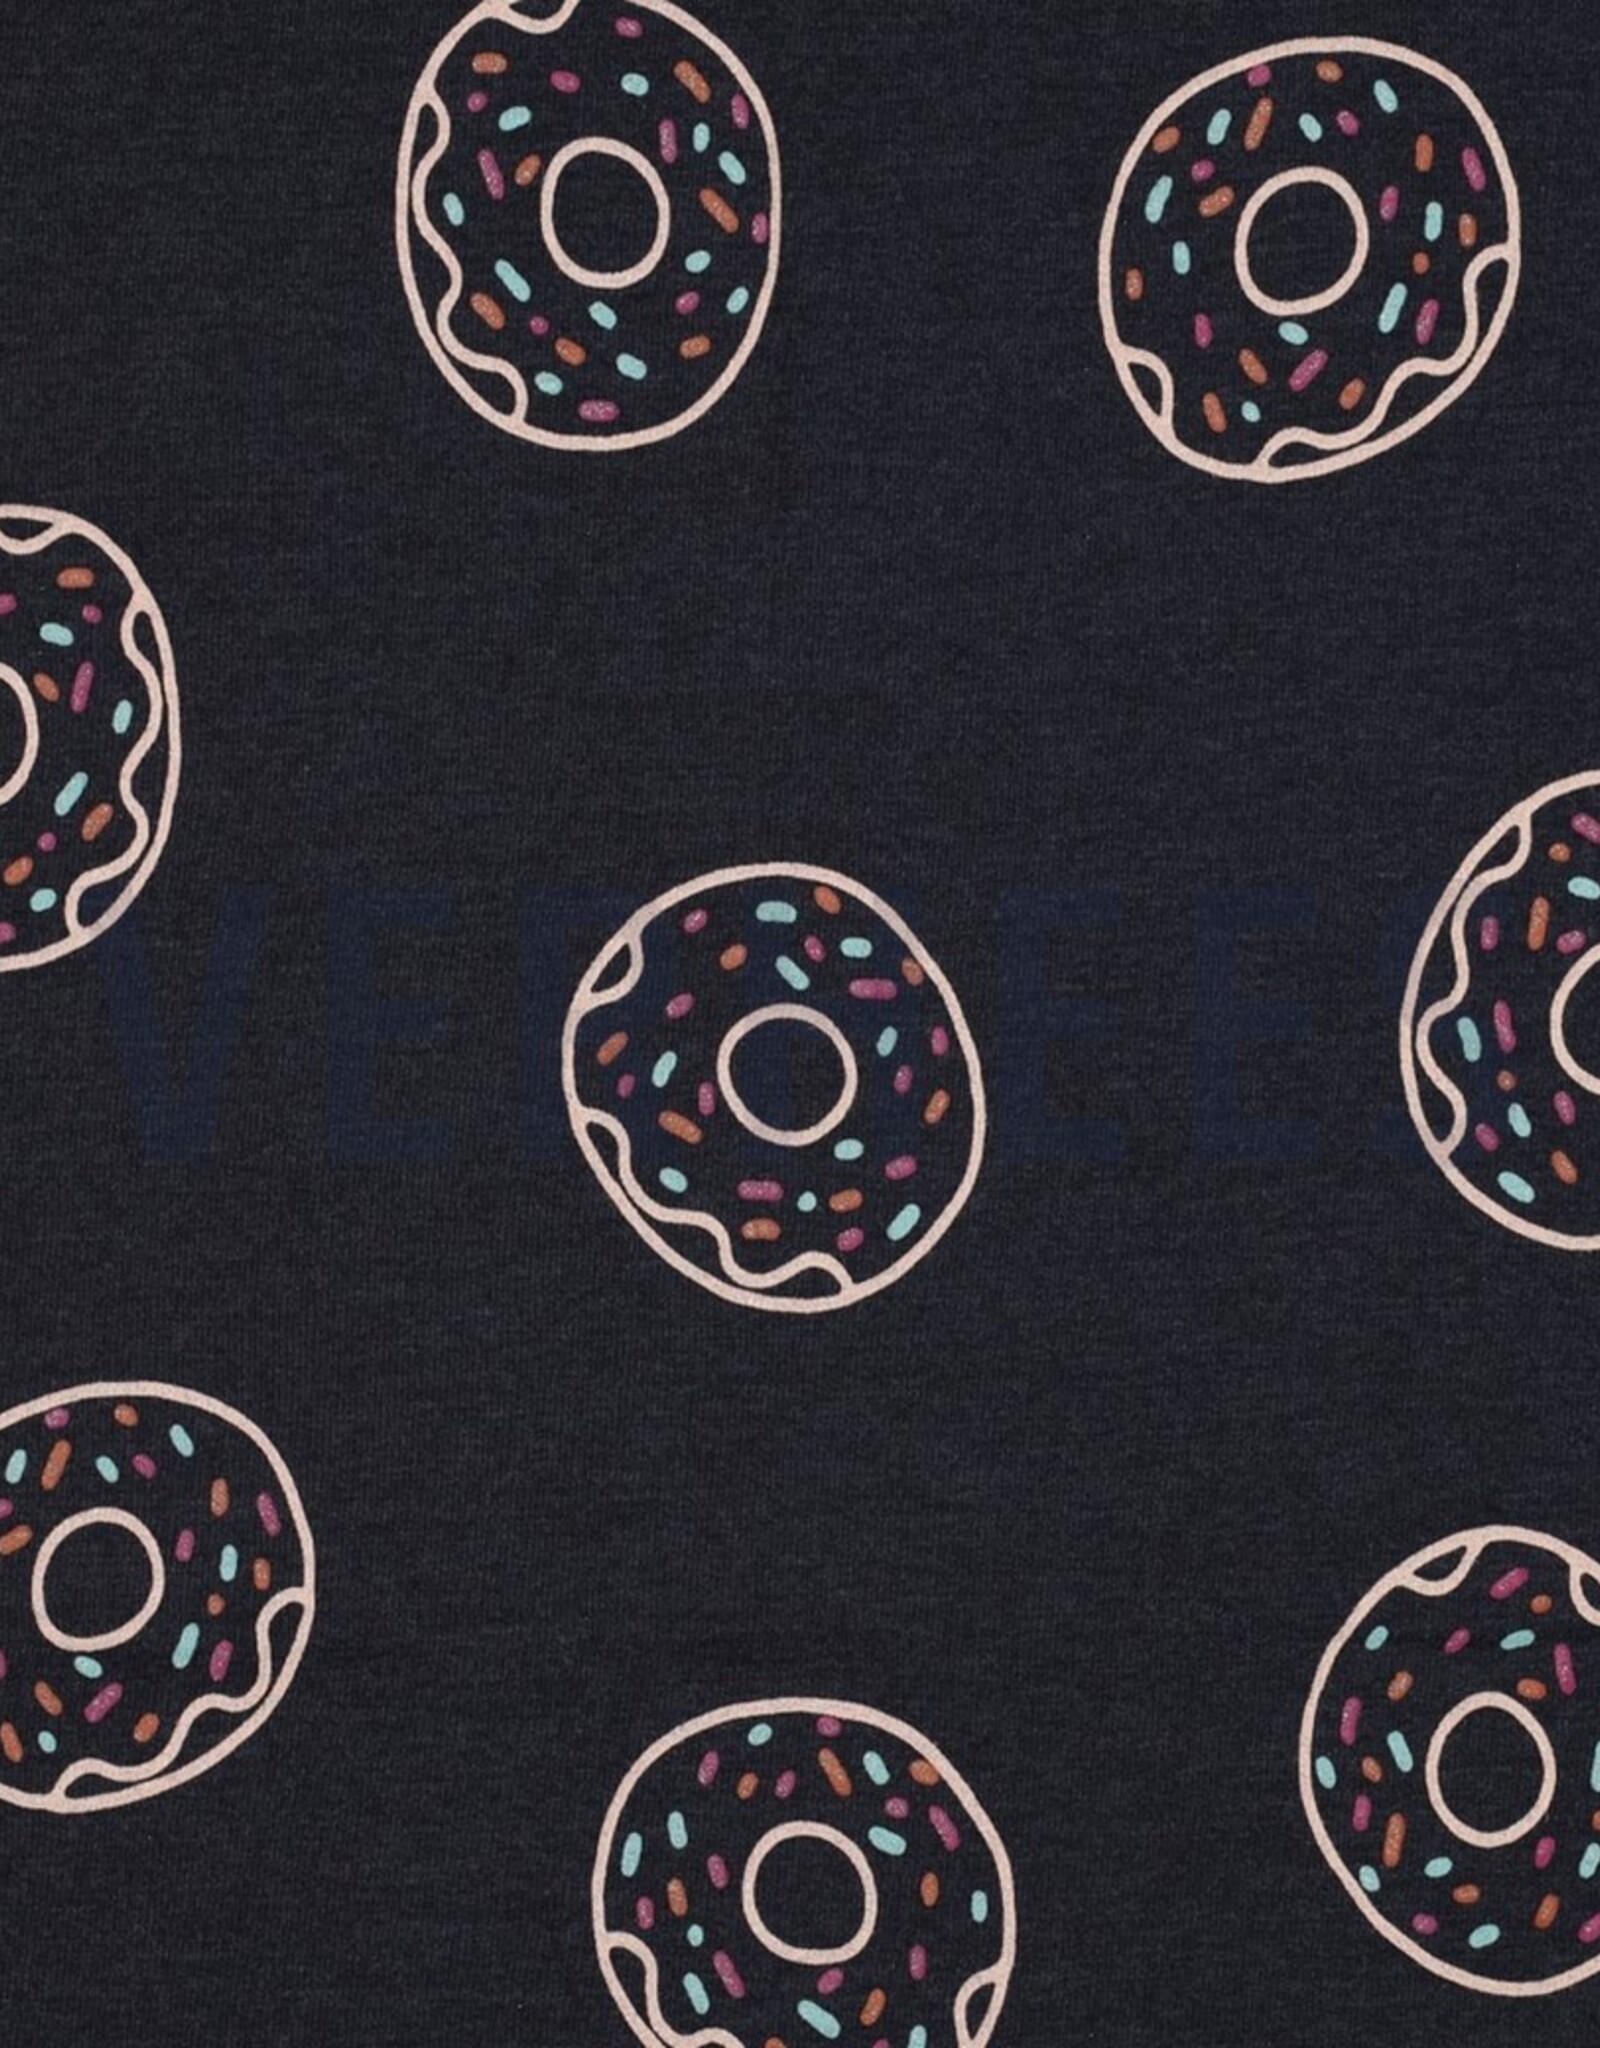 Stoffenschuur selectie Jersey glitter donuts melange indigo